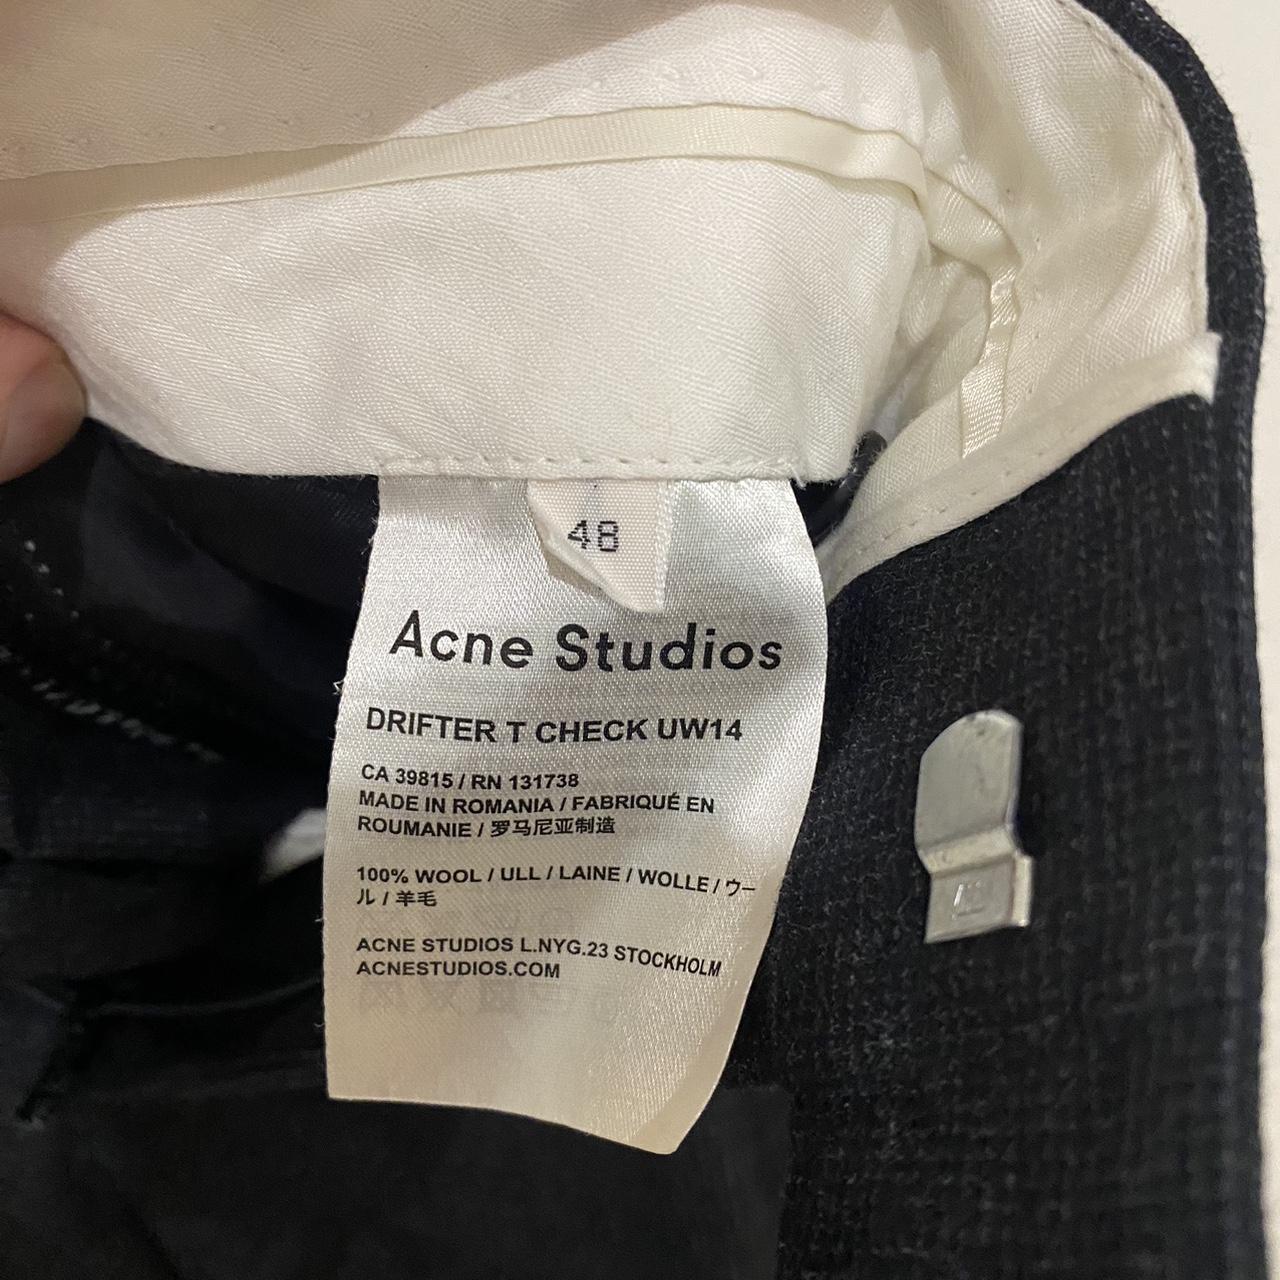 Acne Studios Drifter 100% Wool Suit Trousers Sz 48... - Depop